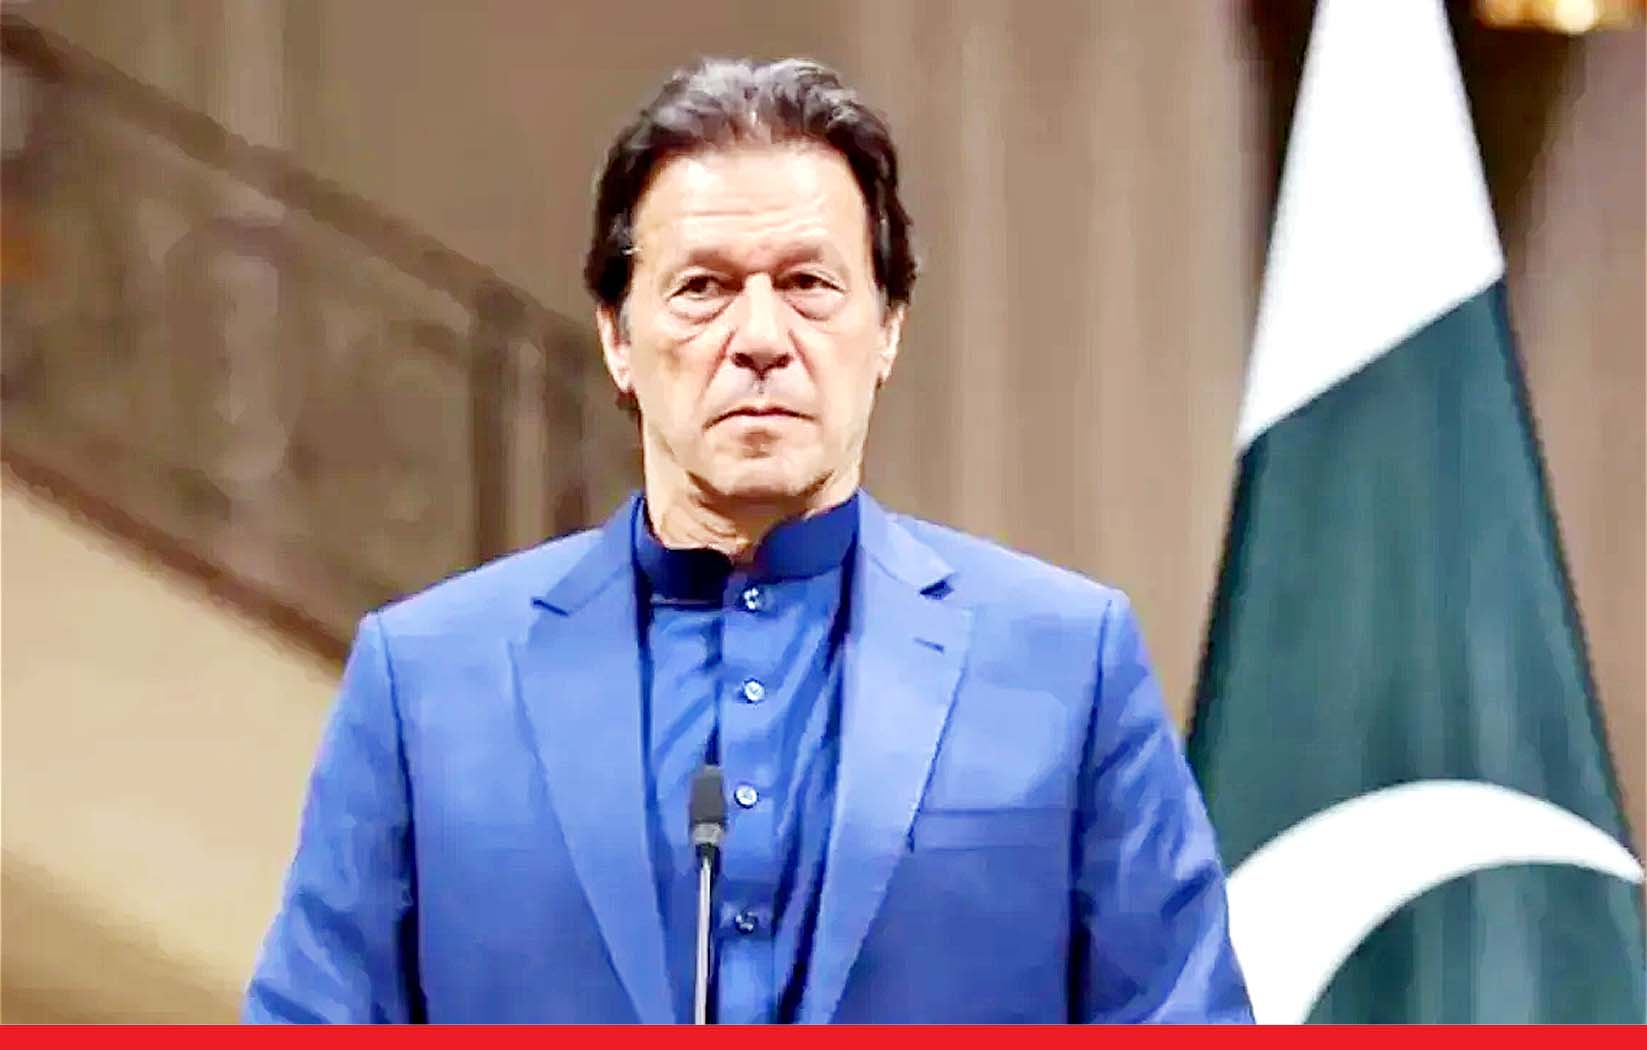 दिवालिया होने की कगार पर पाकिस्तान तीन हिस्सों में बंट जाएगा : इमरान खान